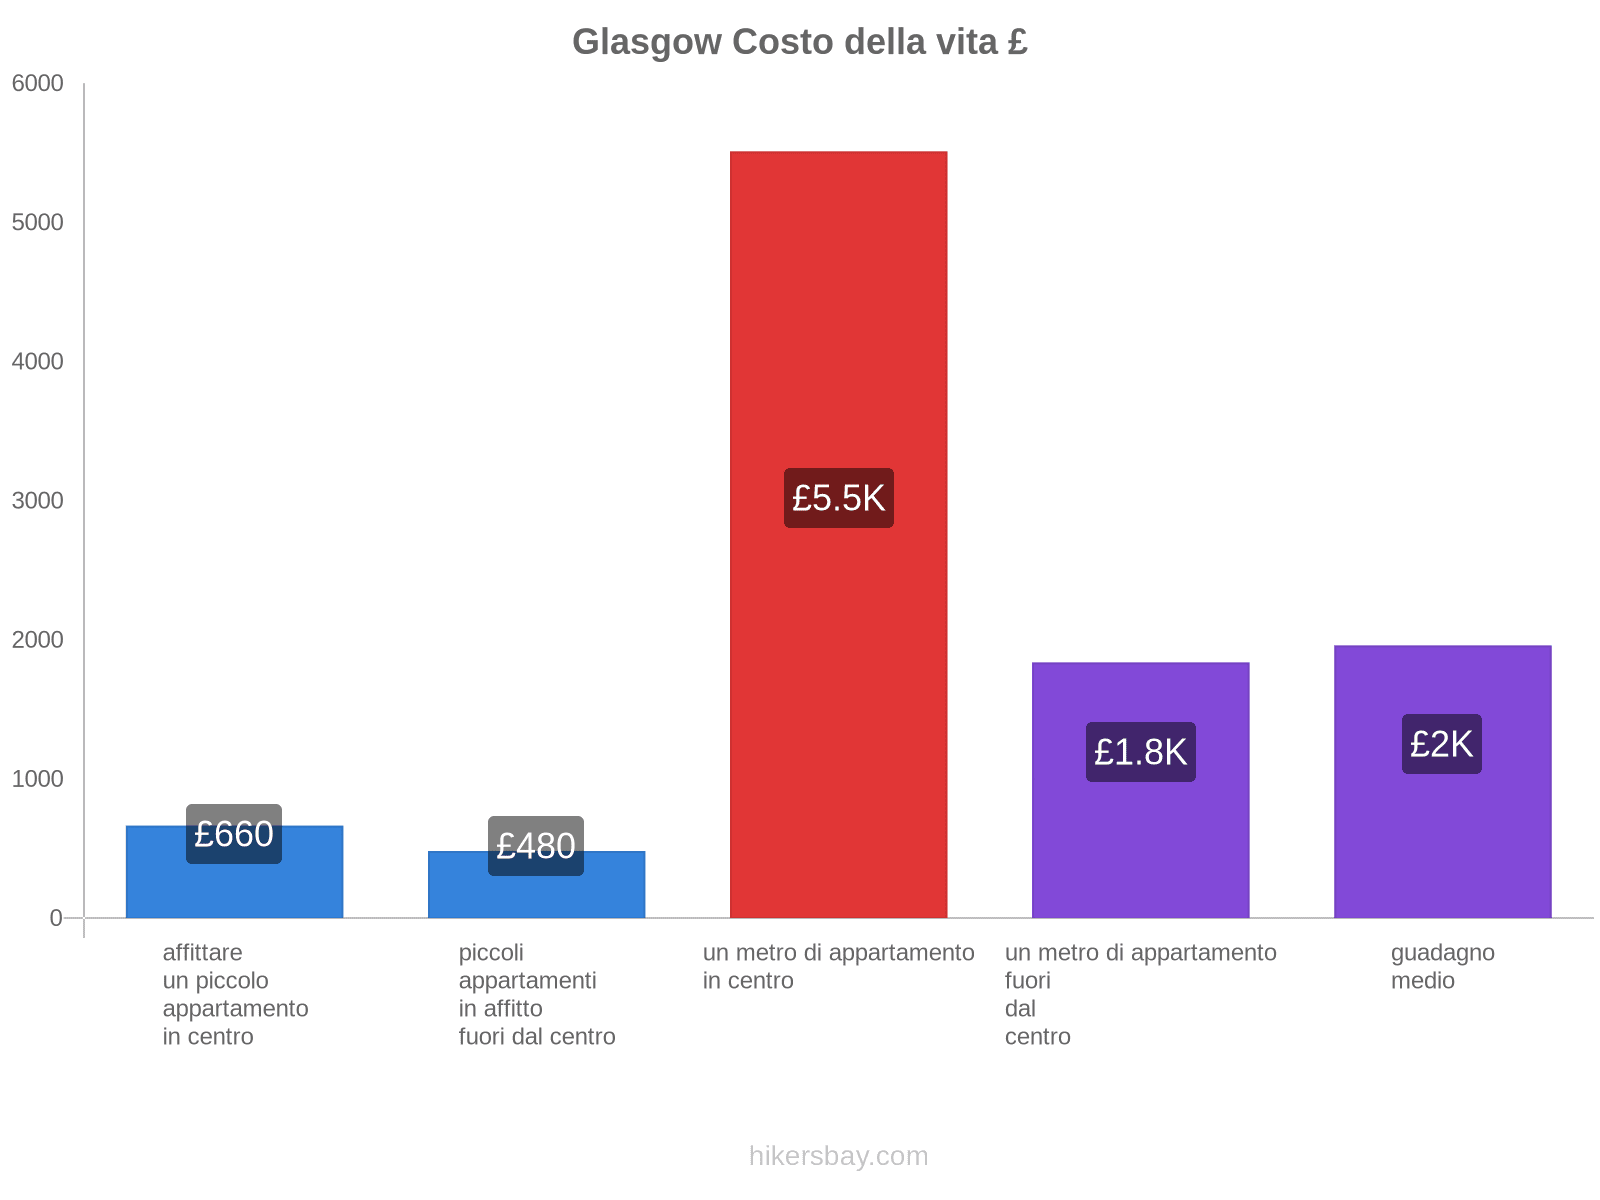 Glasgow costo della vita hikersbay.com